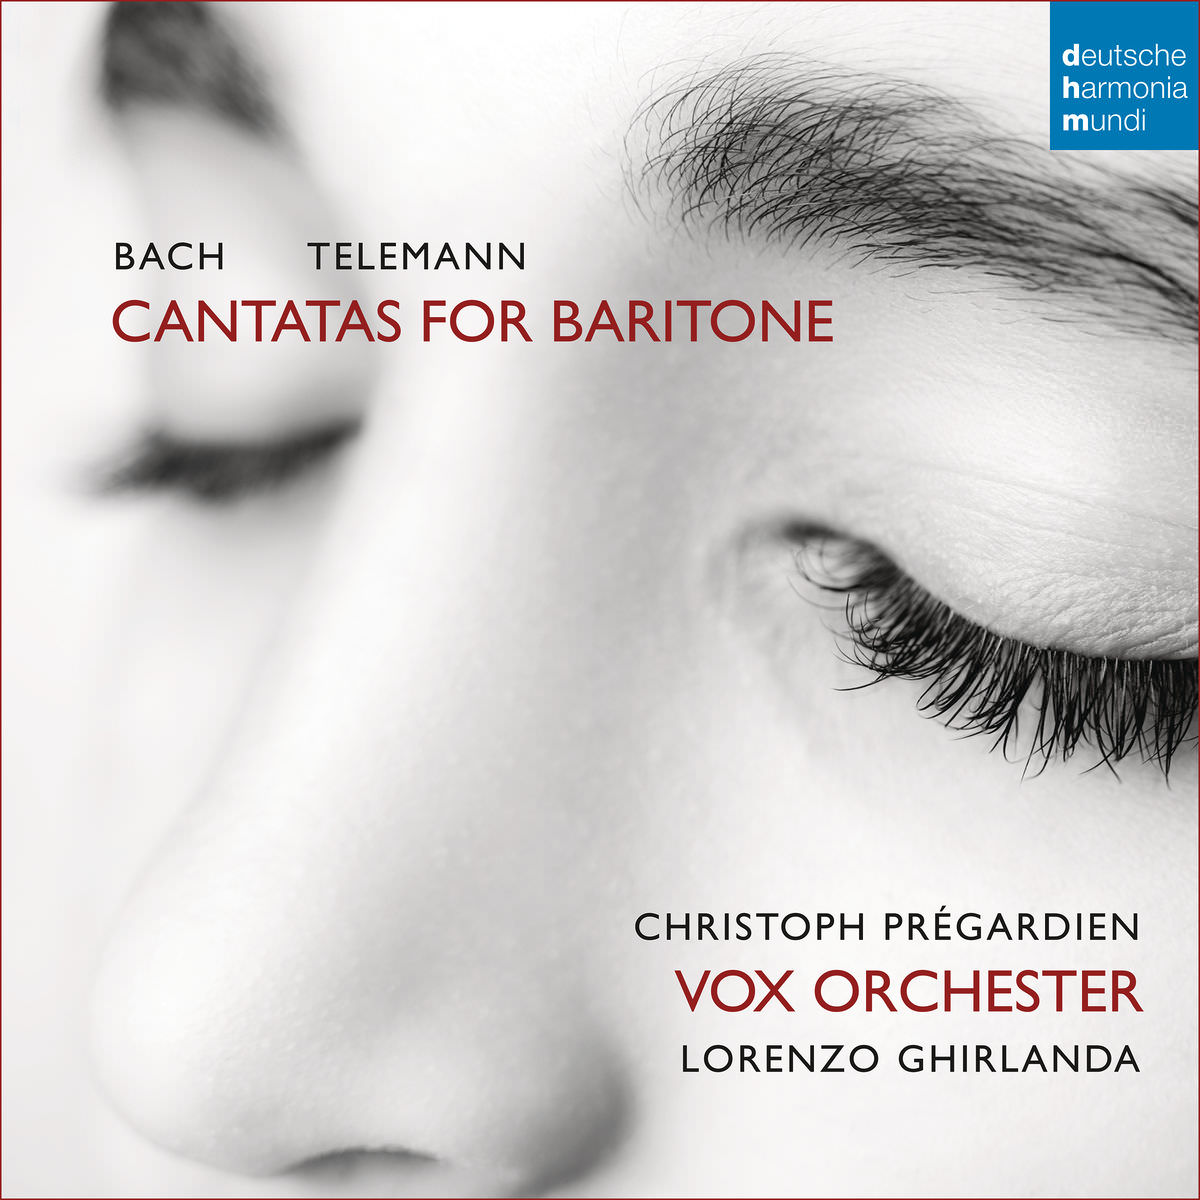 Christoph Pregardien - Bach & Telemann: Cantatas for Baritone (2018) [FLAC 24bit/48kHz]